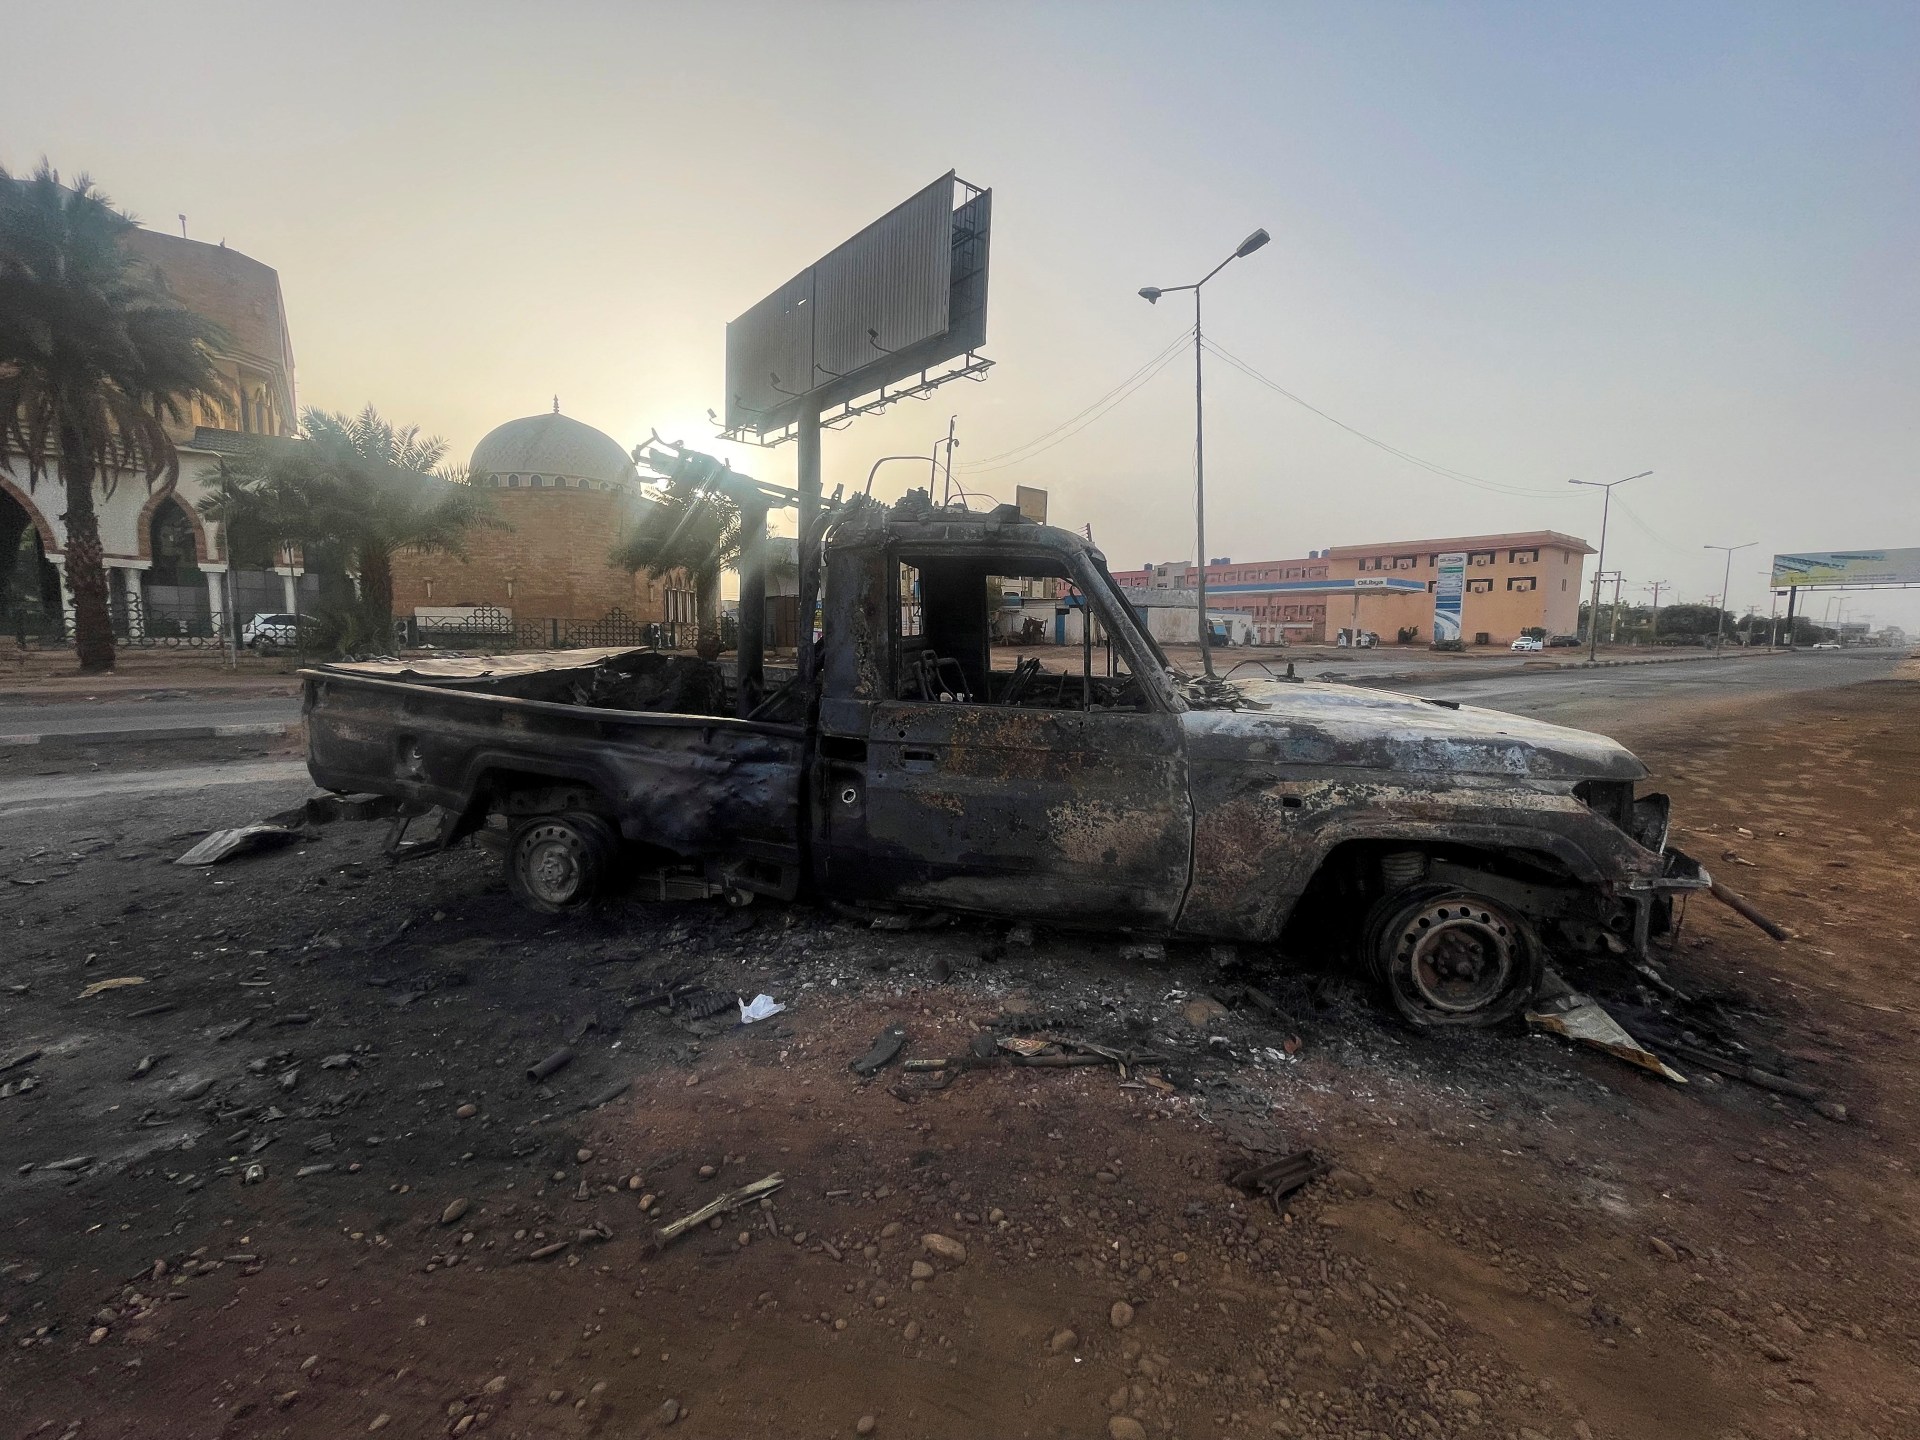 Analisis: UEA, Mesir Lebih Dekat ke Sisi Berbeda dalam Konflik Sudan |  Berita Konflik